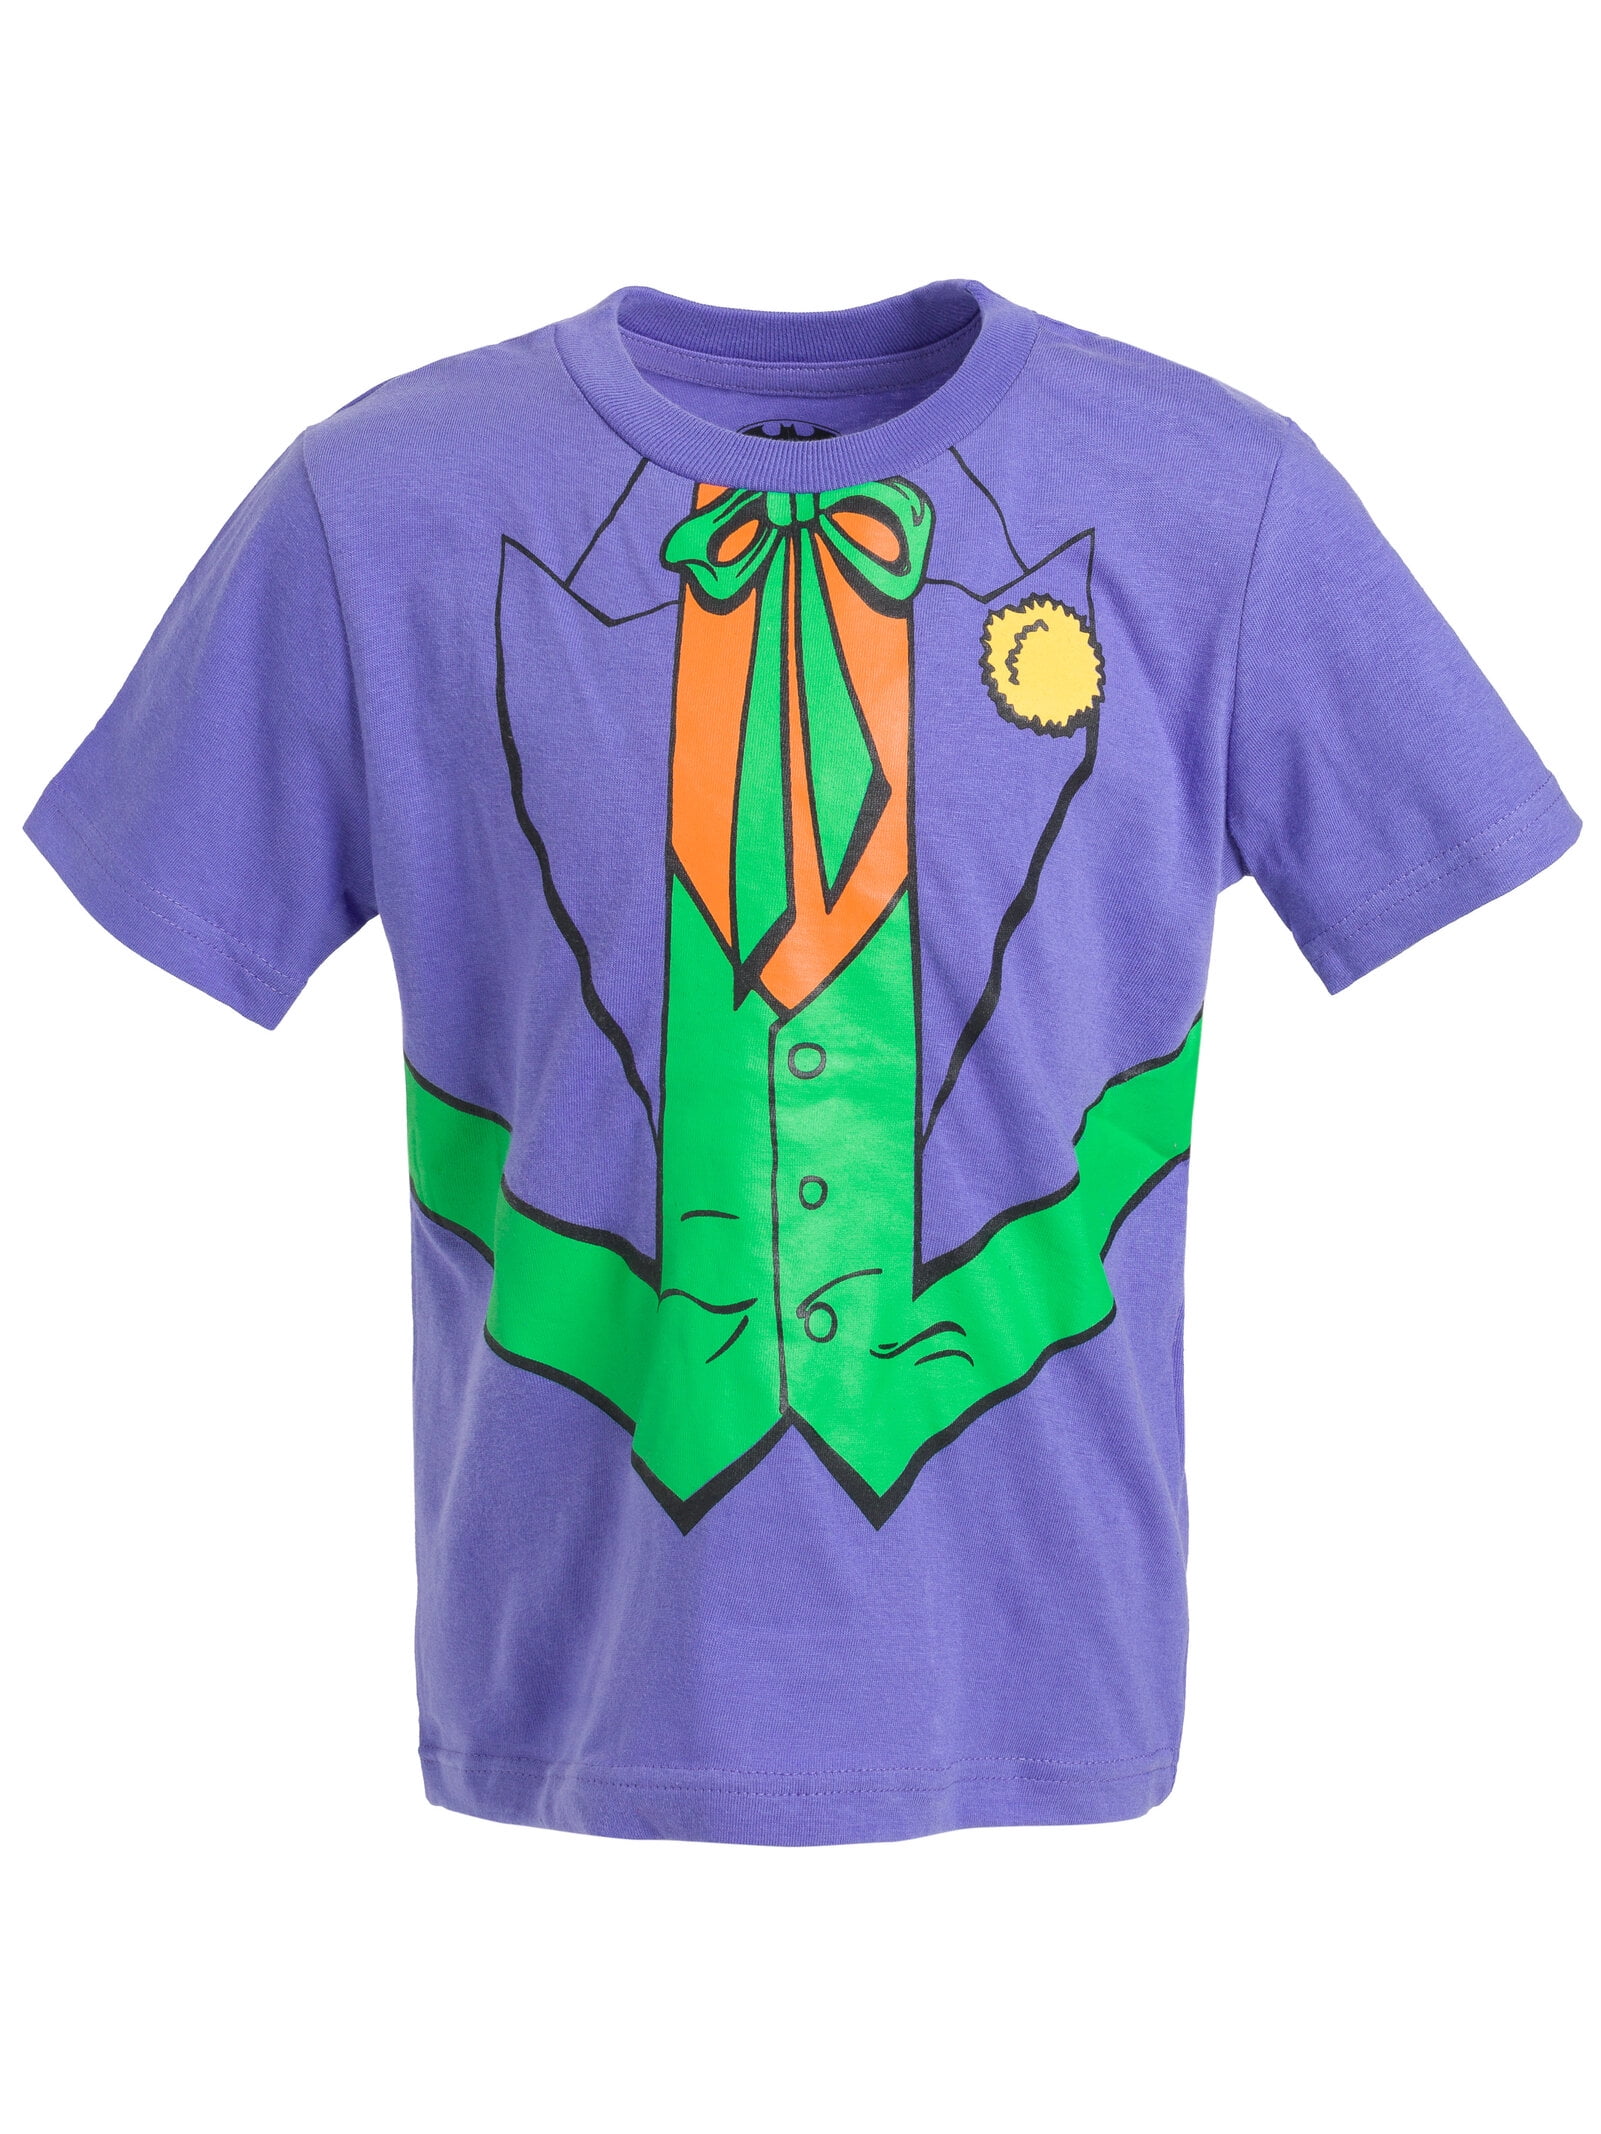 DC Comics Batman Joker Riddler Little Boys 3 Pack T-Shirts Toddler to Big  Kid